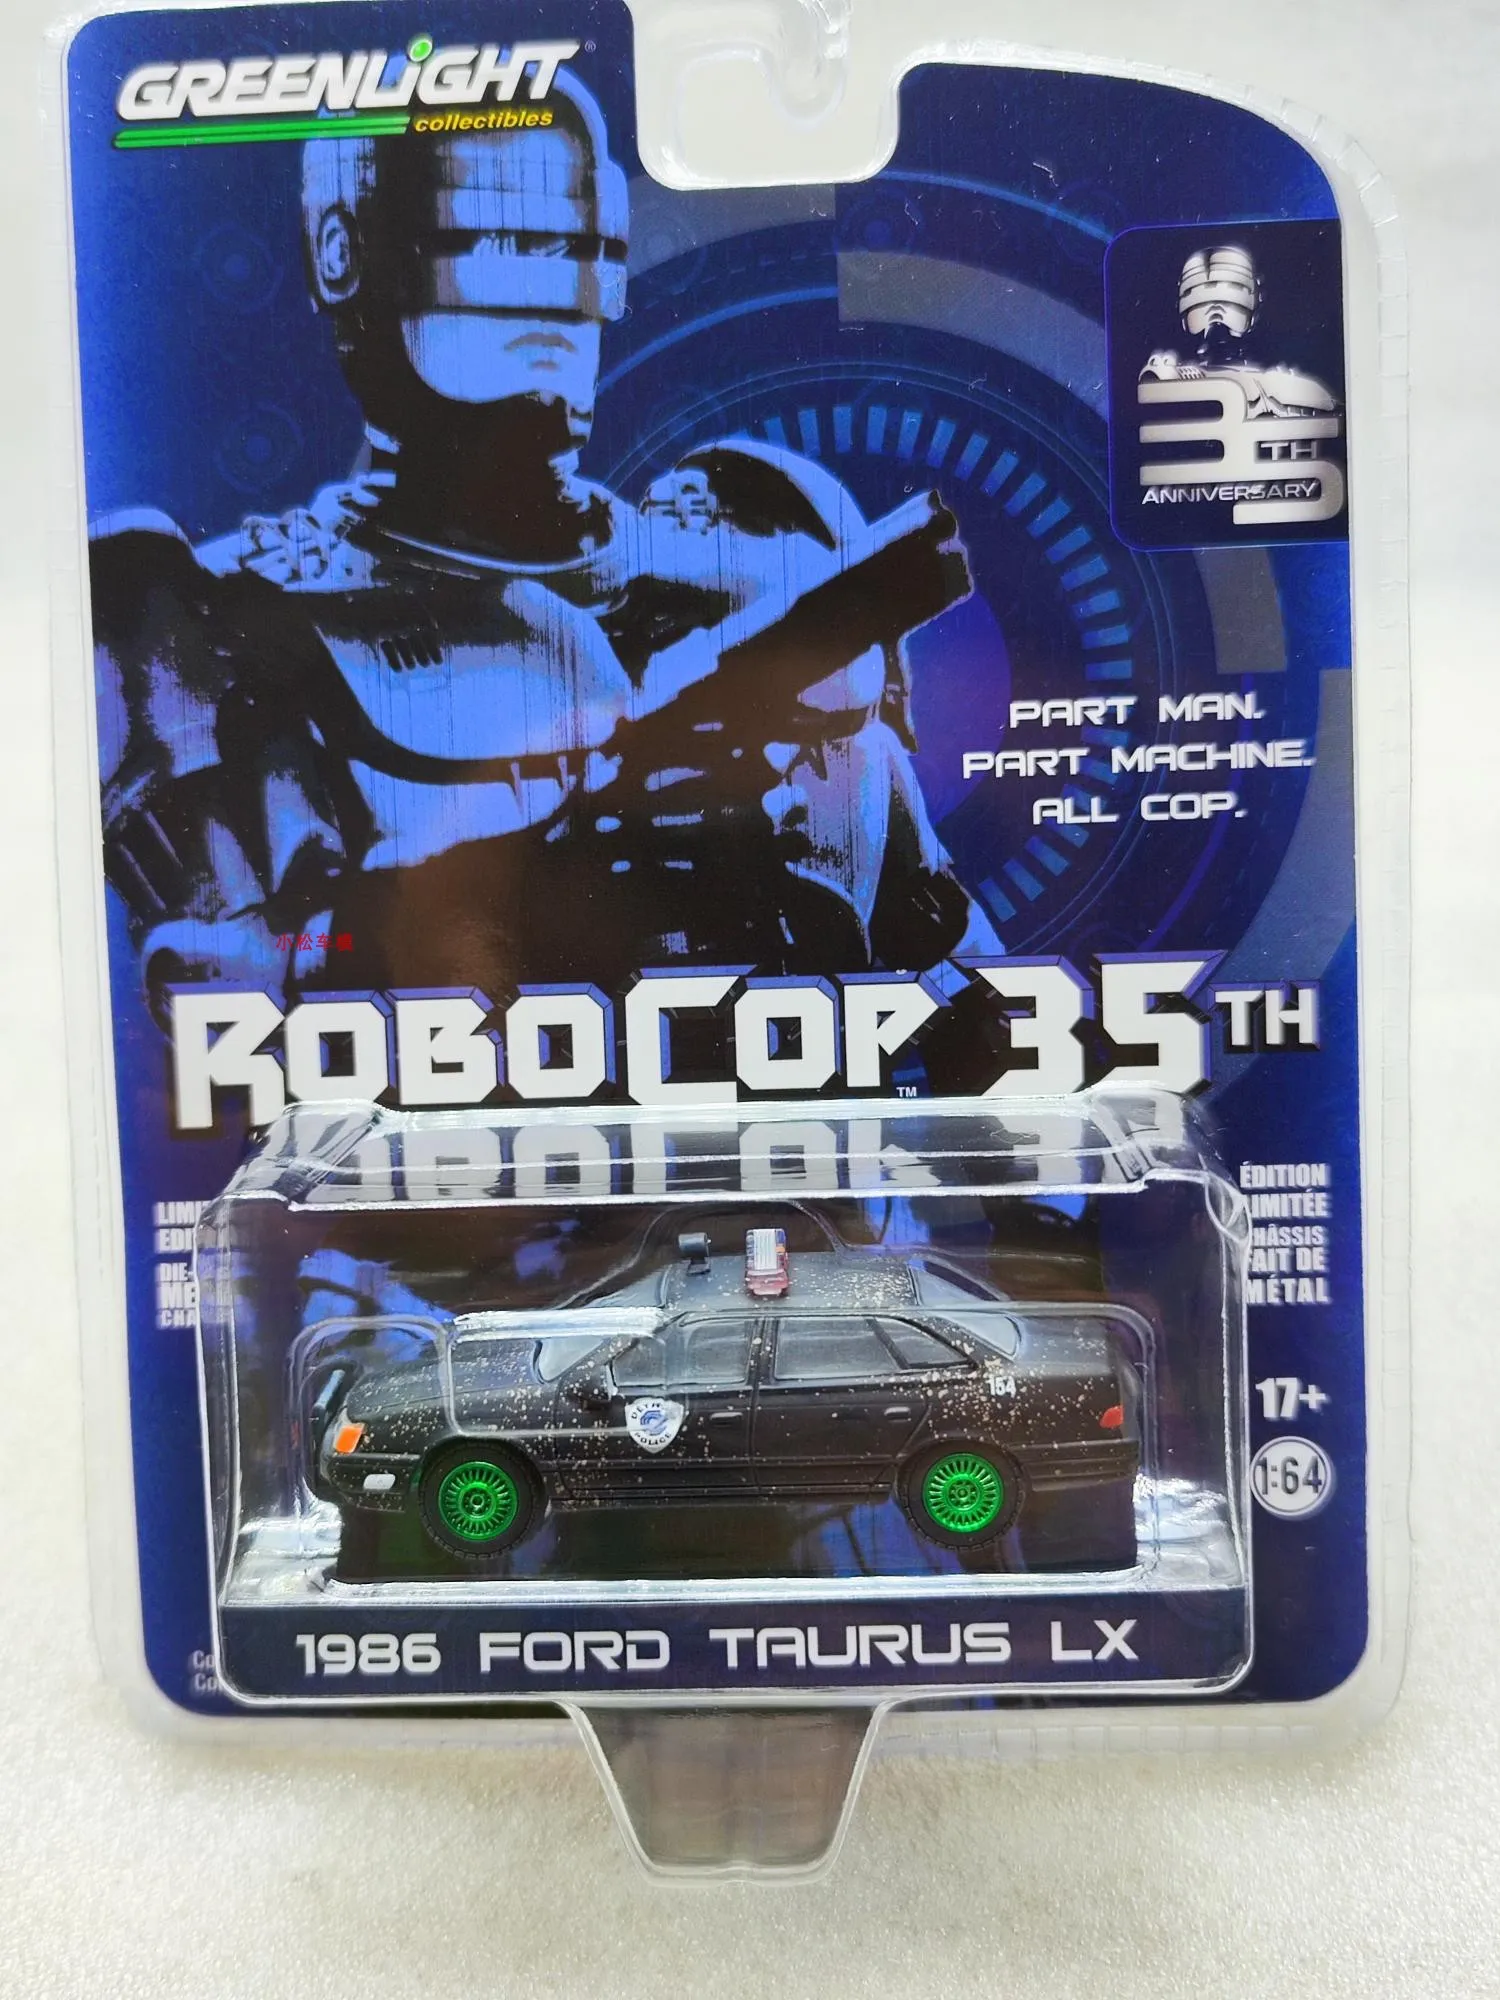 

Литой автомобиль GreenLight масштаб 1/64, игрушки 1986 Ford Taurus LX, литой металлический автомобиль, модель игрушки для мальчиков, детская коллекция, подарок другу